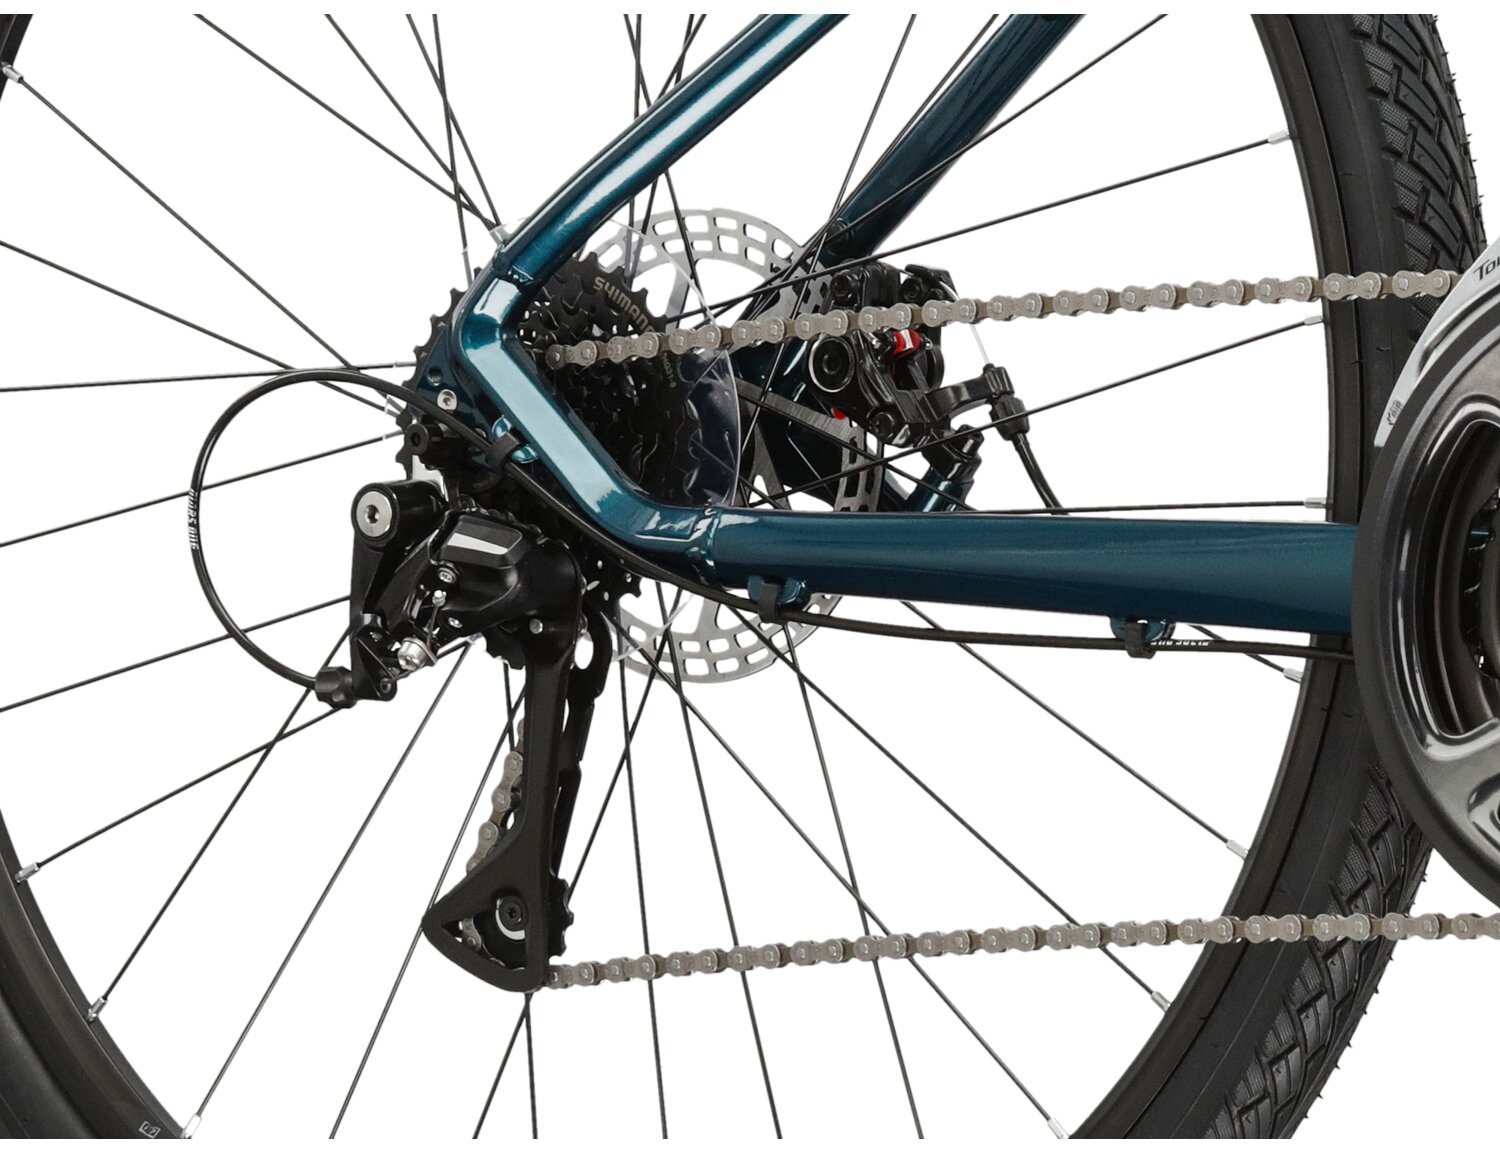  Tylna ośmiobiegowa przerzutka Shimano Acera M3020 oraz mechaniczne hamulce tarczowe w rowerze crossowym damskim KROSS Evado 3.0 